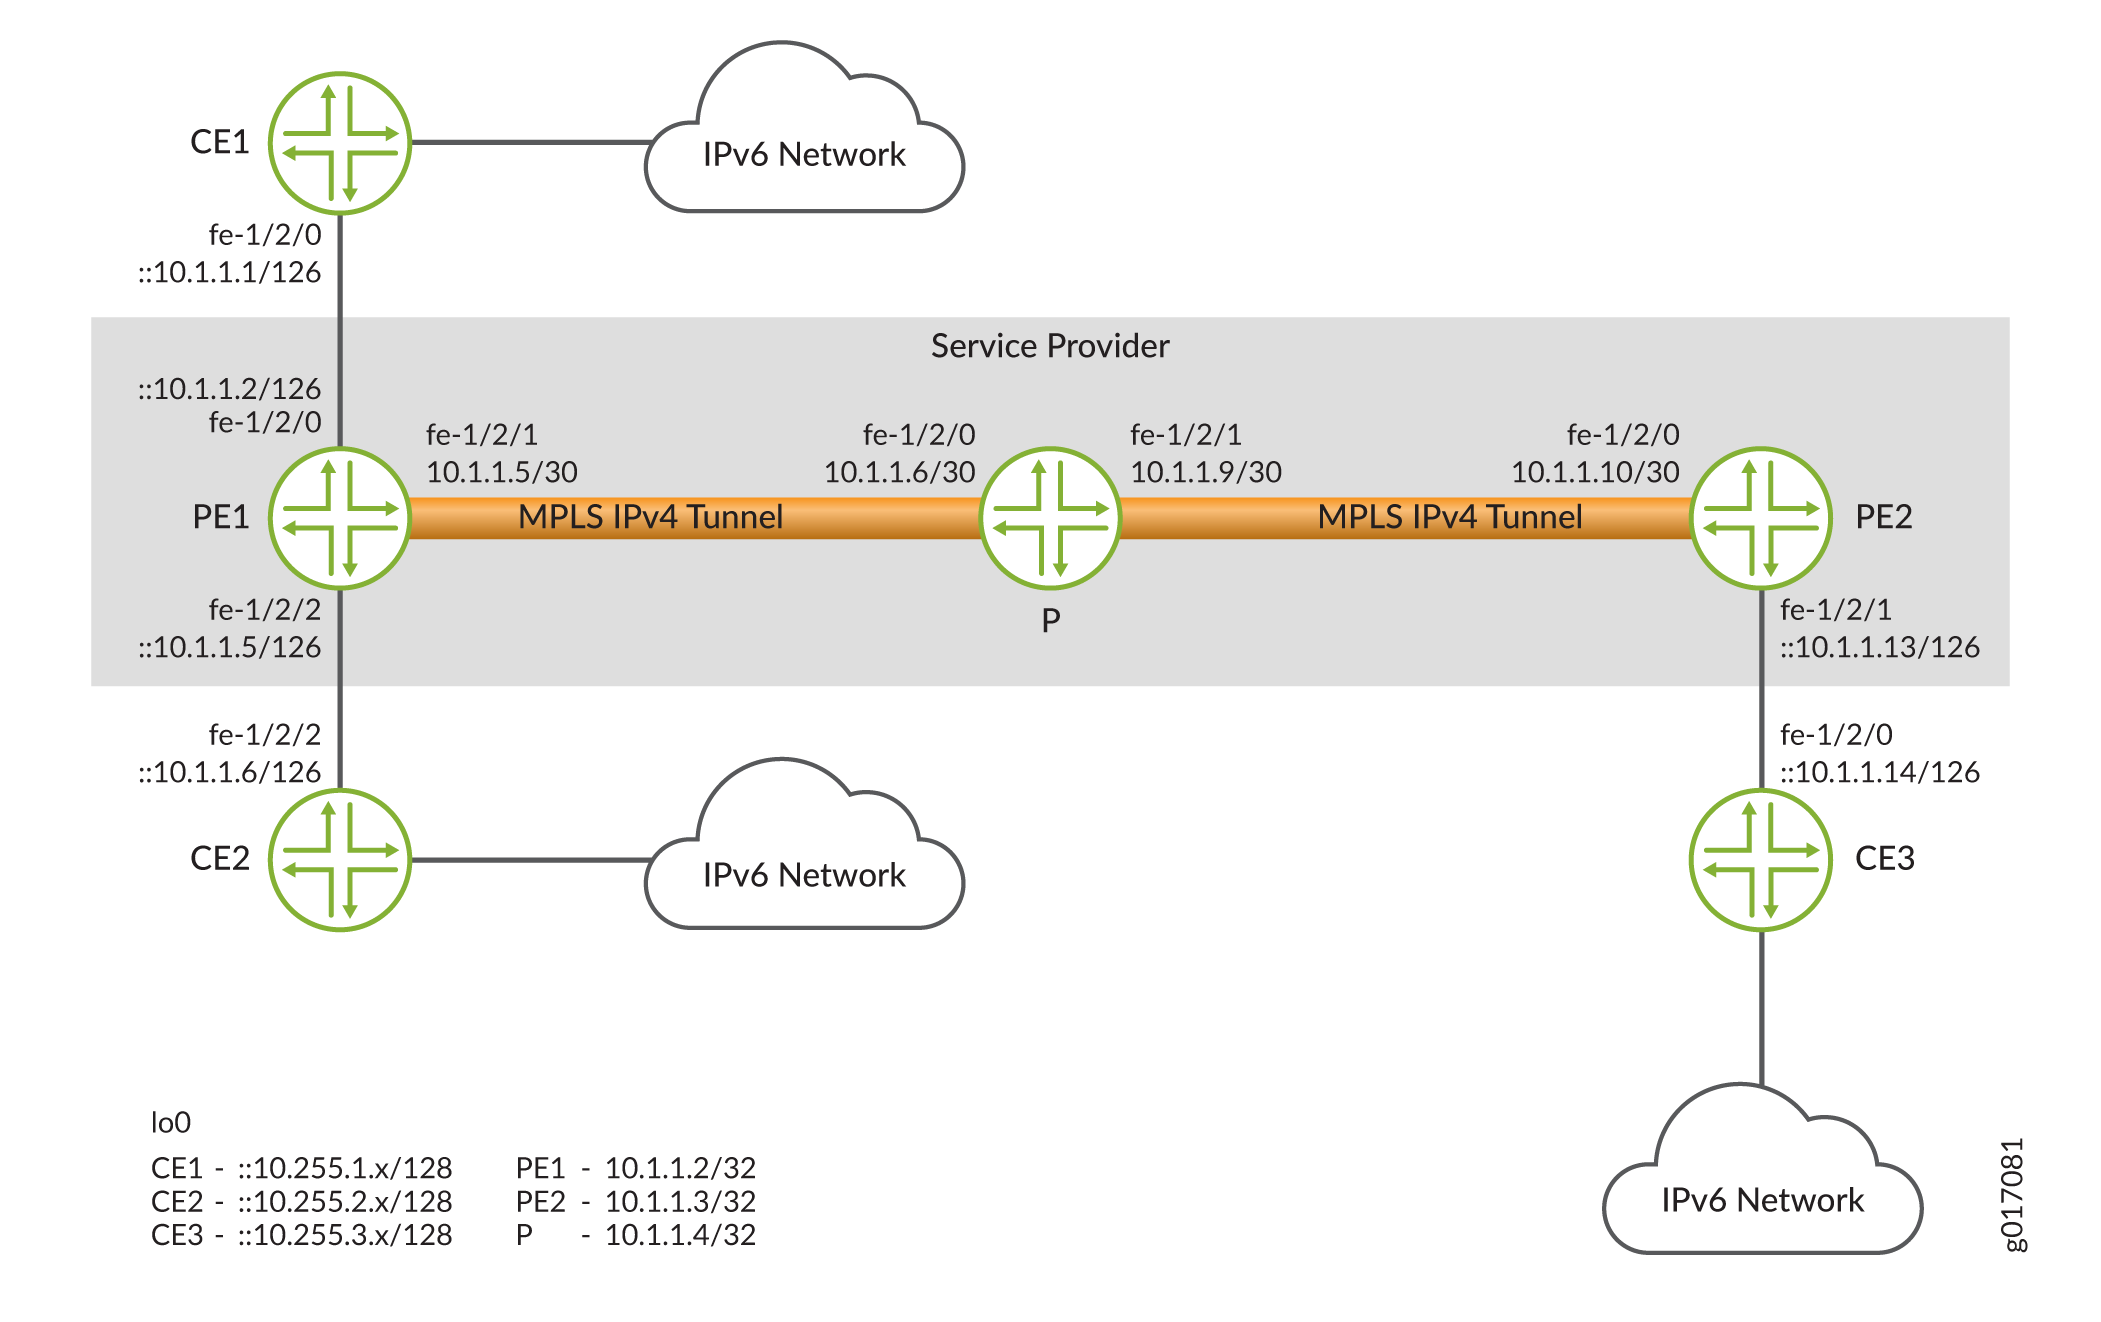 IPv6-Netzwerke, die durch MPLS-IPv4-Tunnel verbunden sind